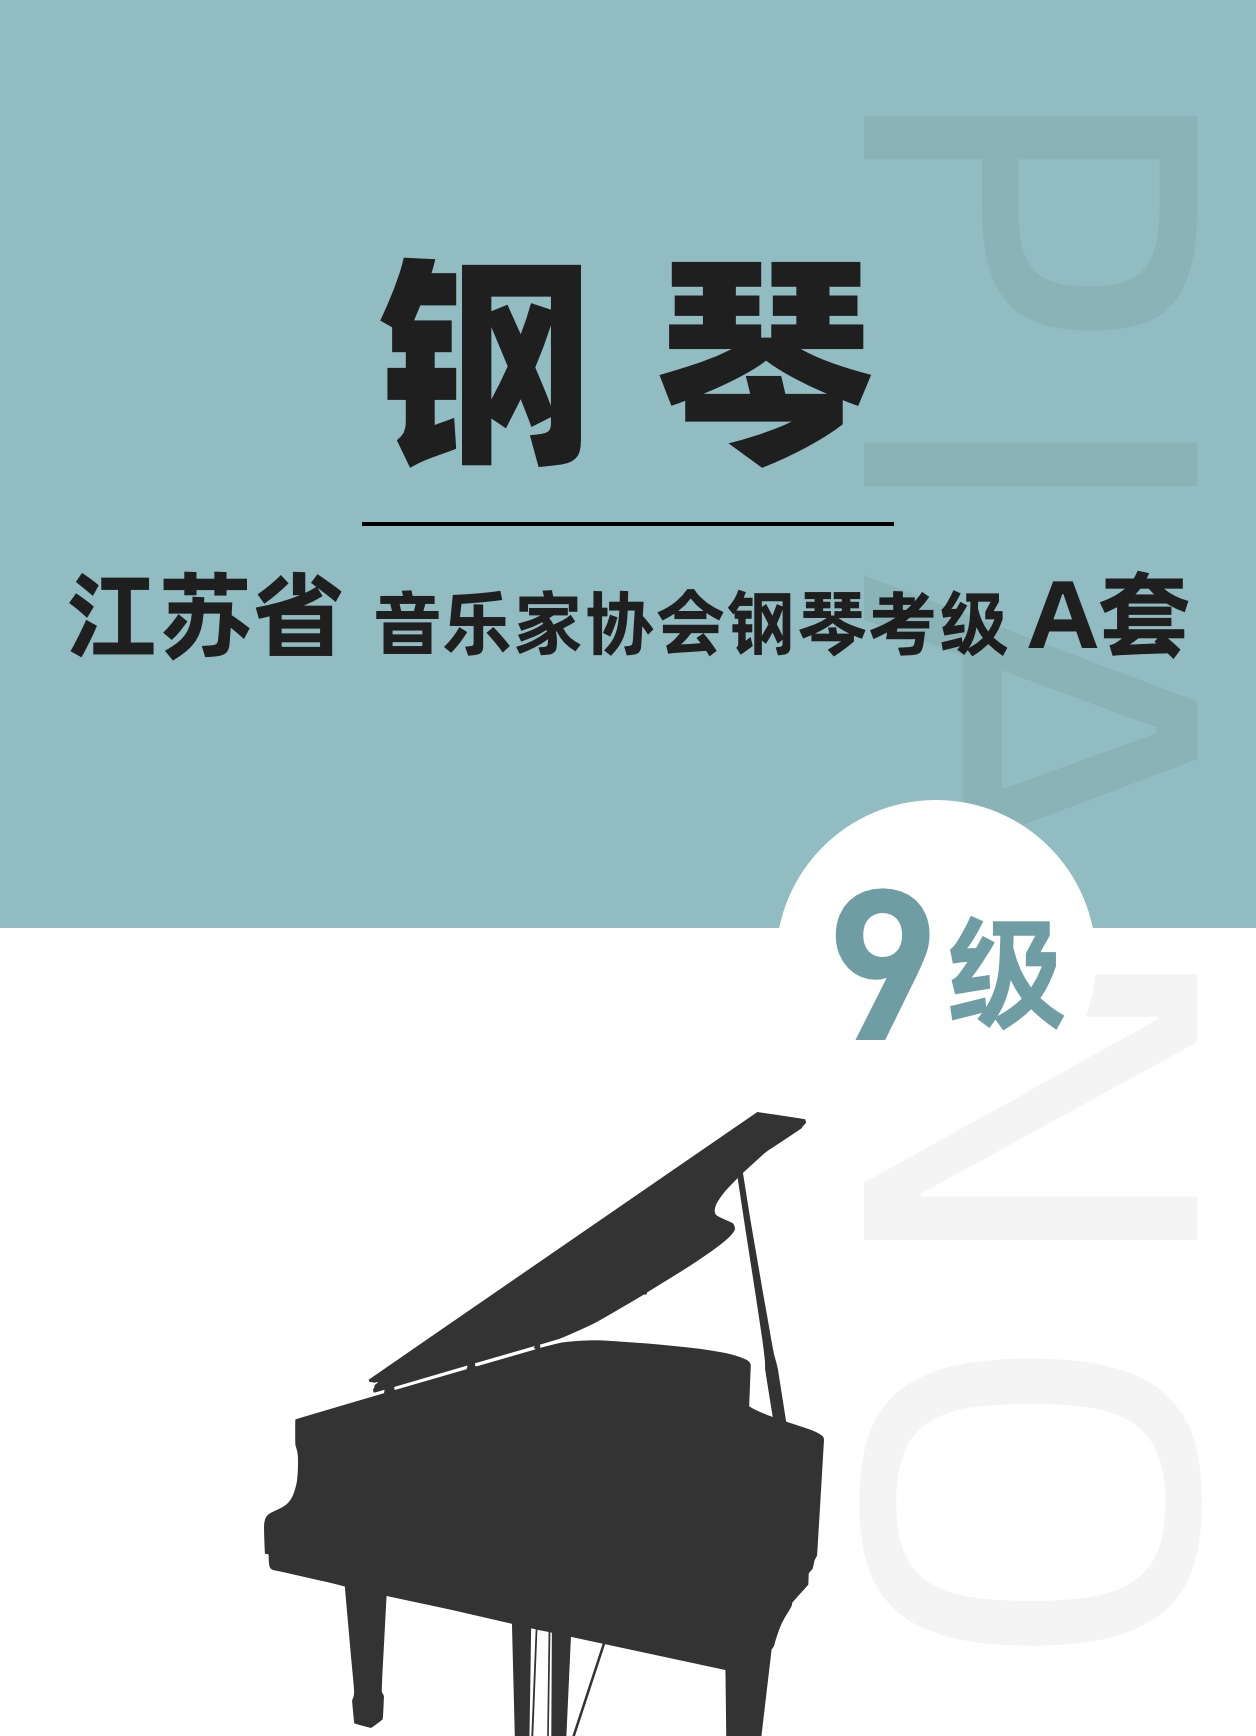 江苏省音乐家协会钢琴考级A套九级